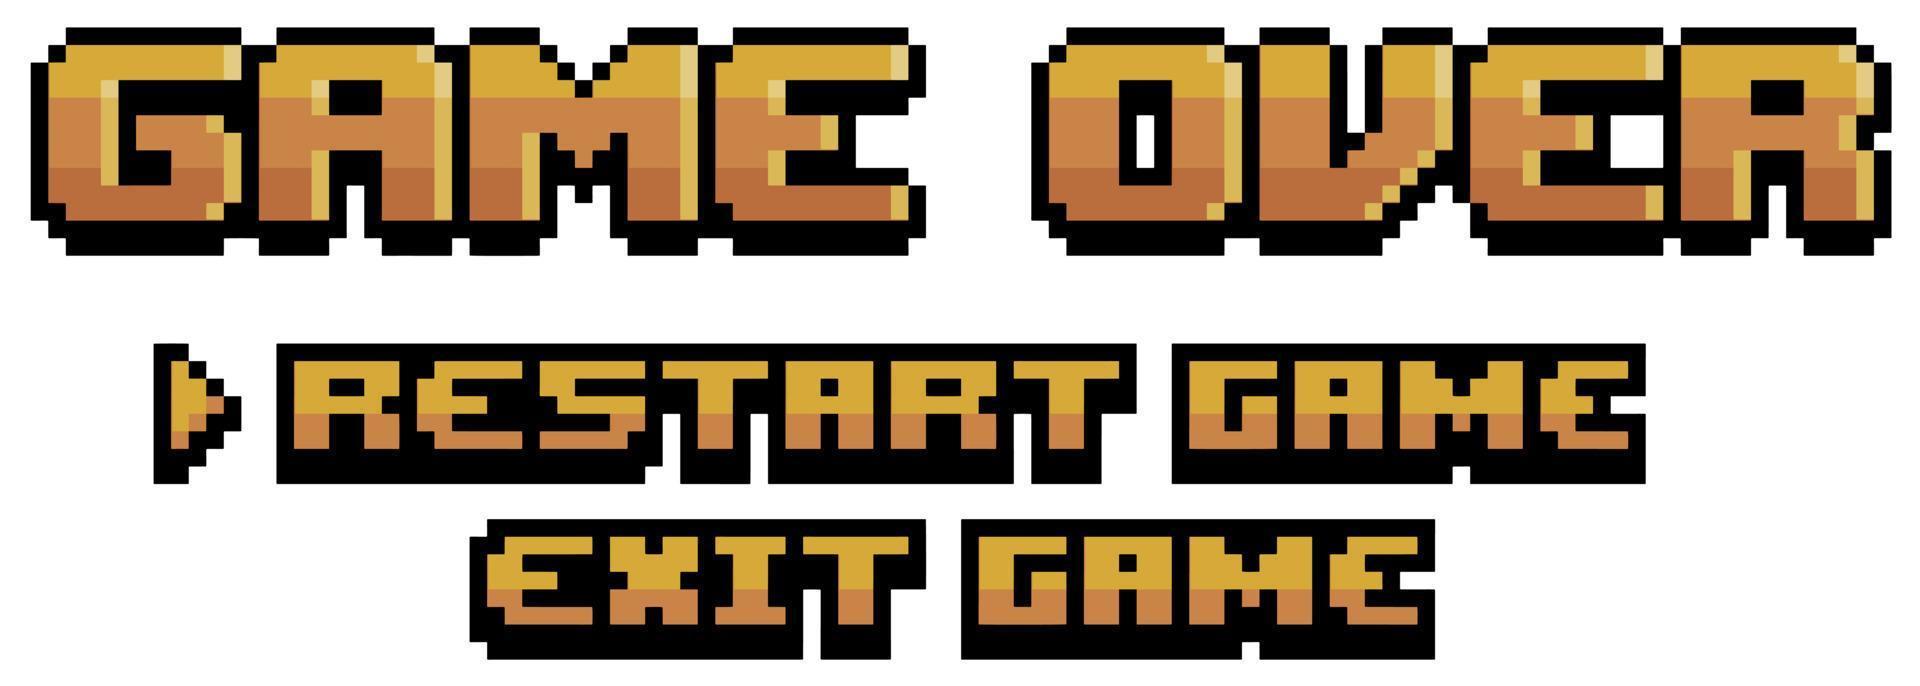 pixel art sobre tela de jogo com ícone de vetor de reinicialização e saída para jogo de 8 bits em fundo branco